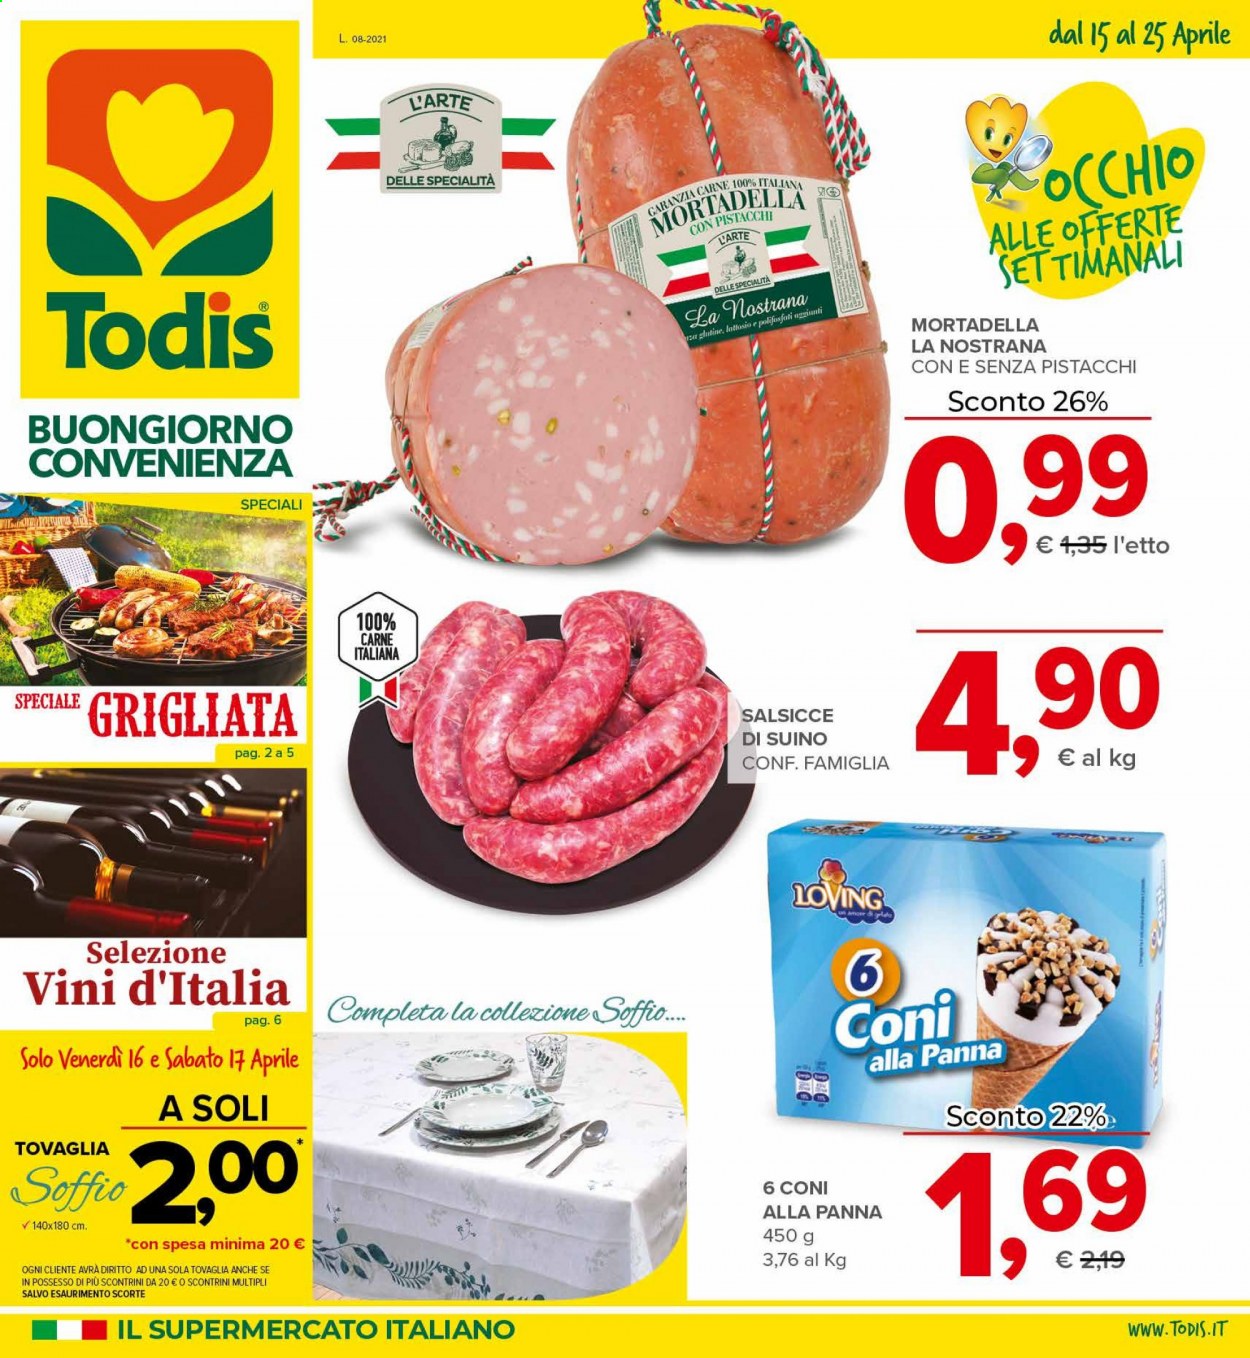 thumbnail - Volantino Todis - 15/4/2021 - 25/4/2021 - Prodotti in offerta - salsiccia, suino, mortadella, tovaglia. Pagina 1.